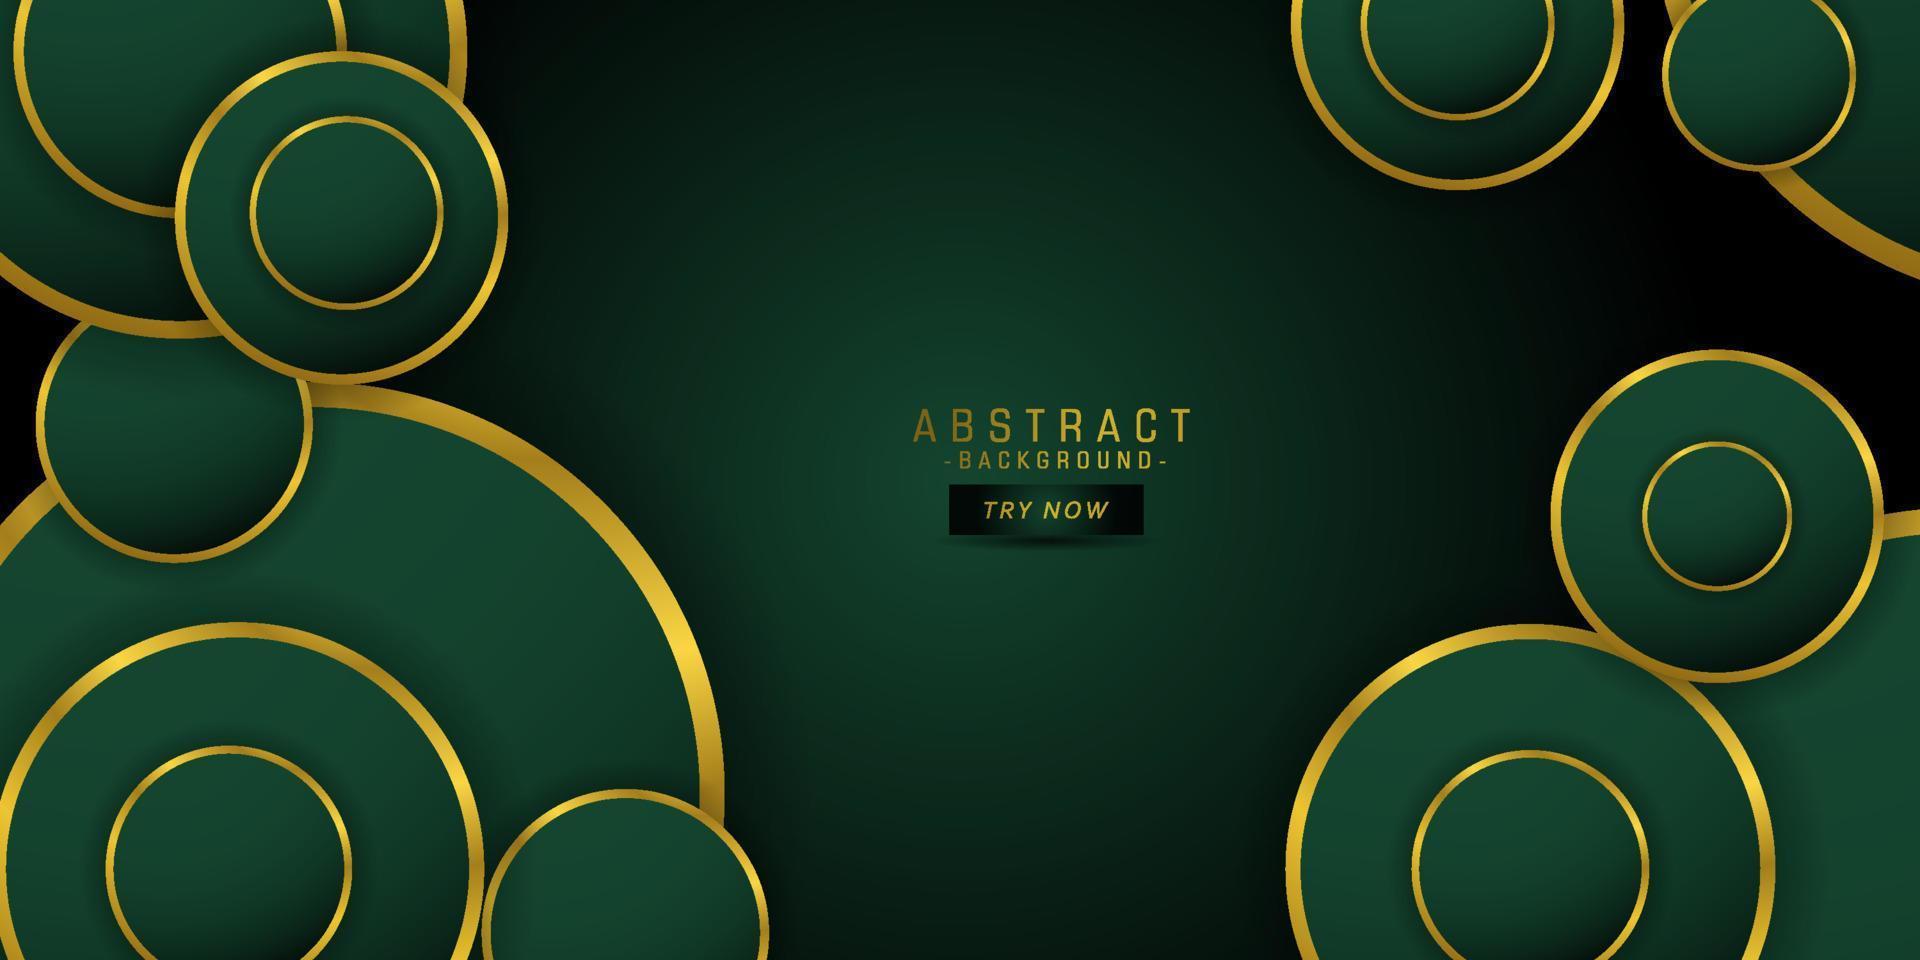 fondos de lujo de color verde oscuro vectorial abstracto moderno con gráficos de círculo geométrico y elementos de línea dorada para afiches, volantes, tableros digitales y diseño conceptual.eps10 vector